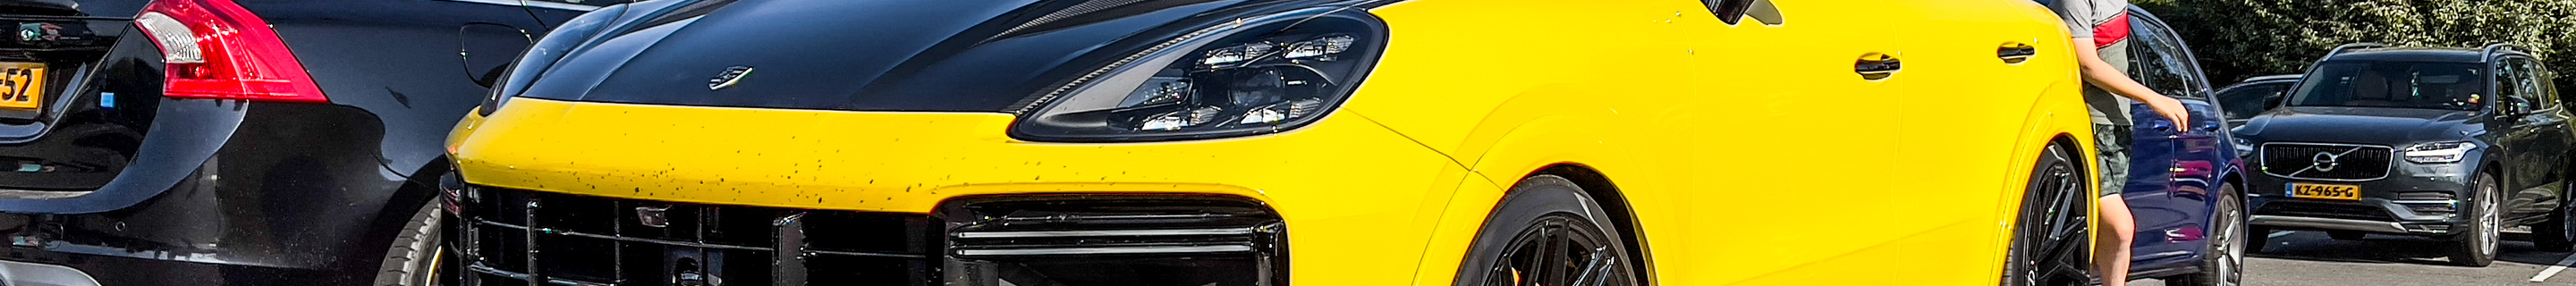 Porsche TechArt Cayenne Coupé Turbo GT